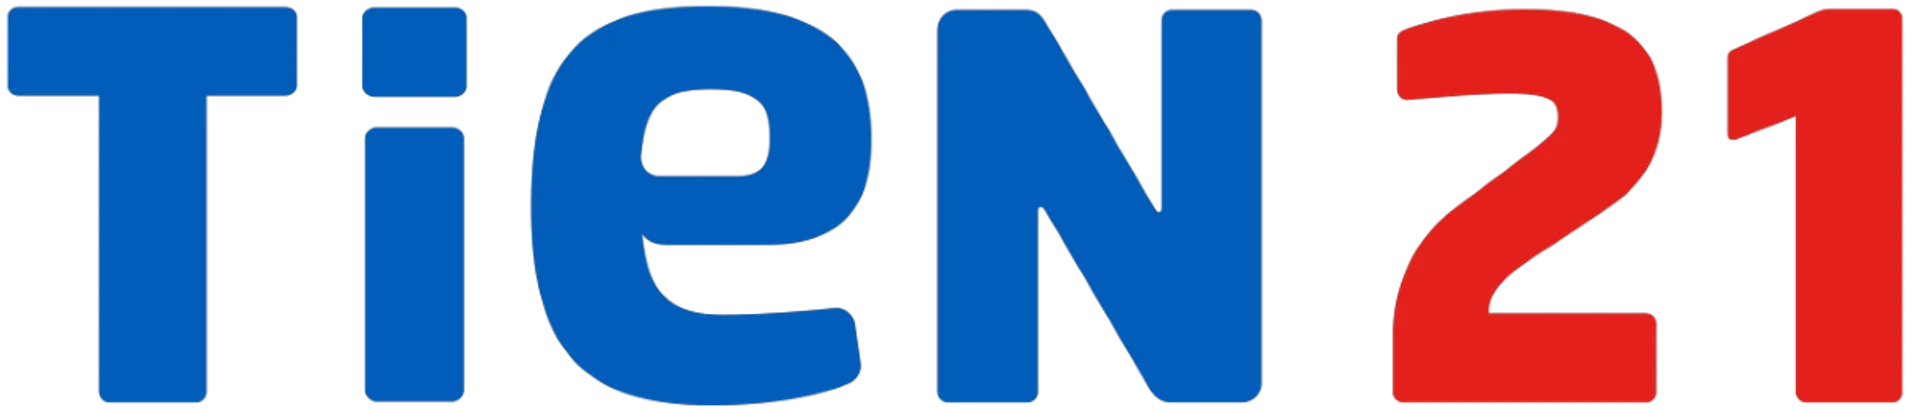 Logo de Tien 21